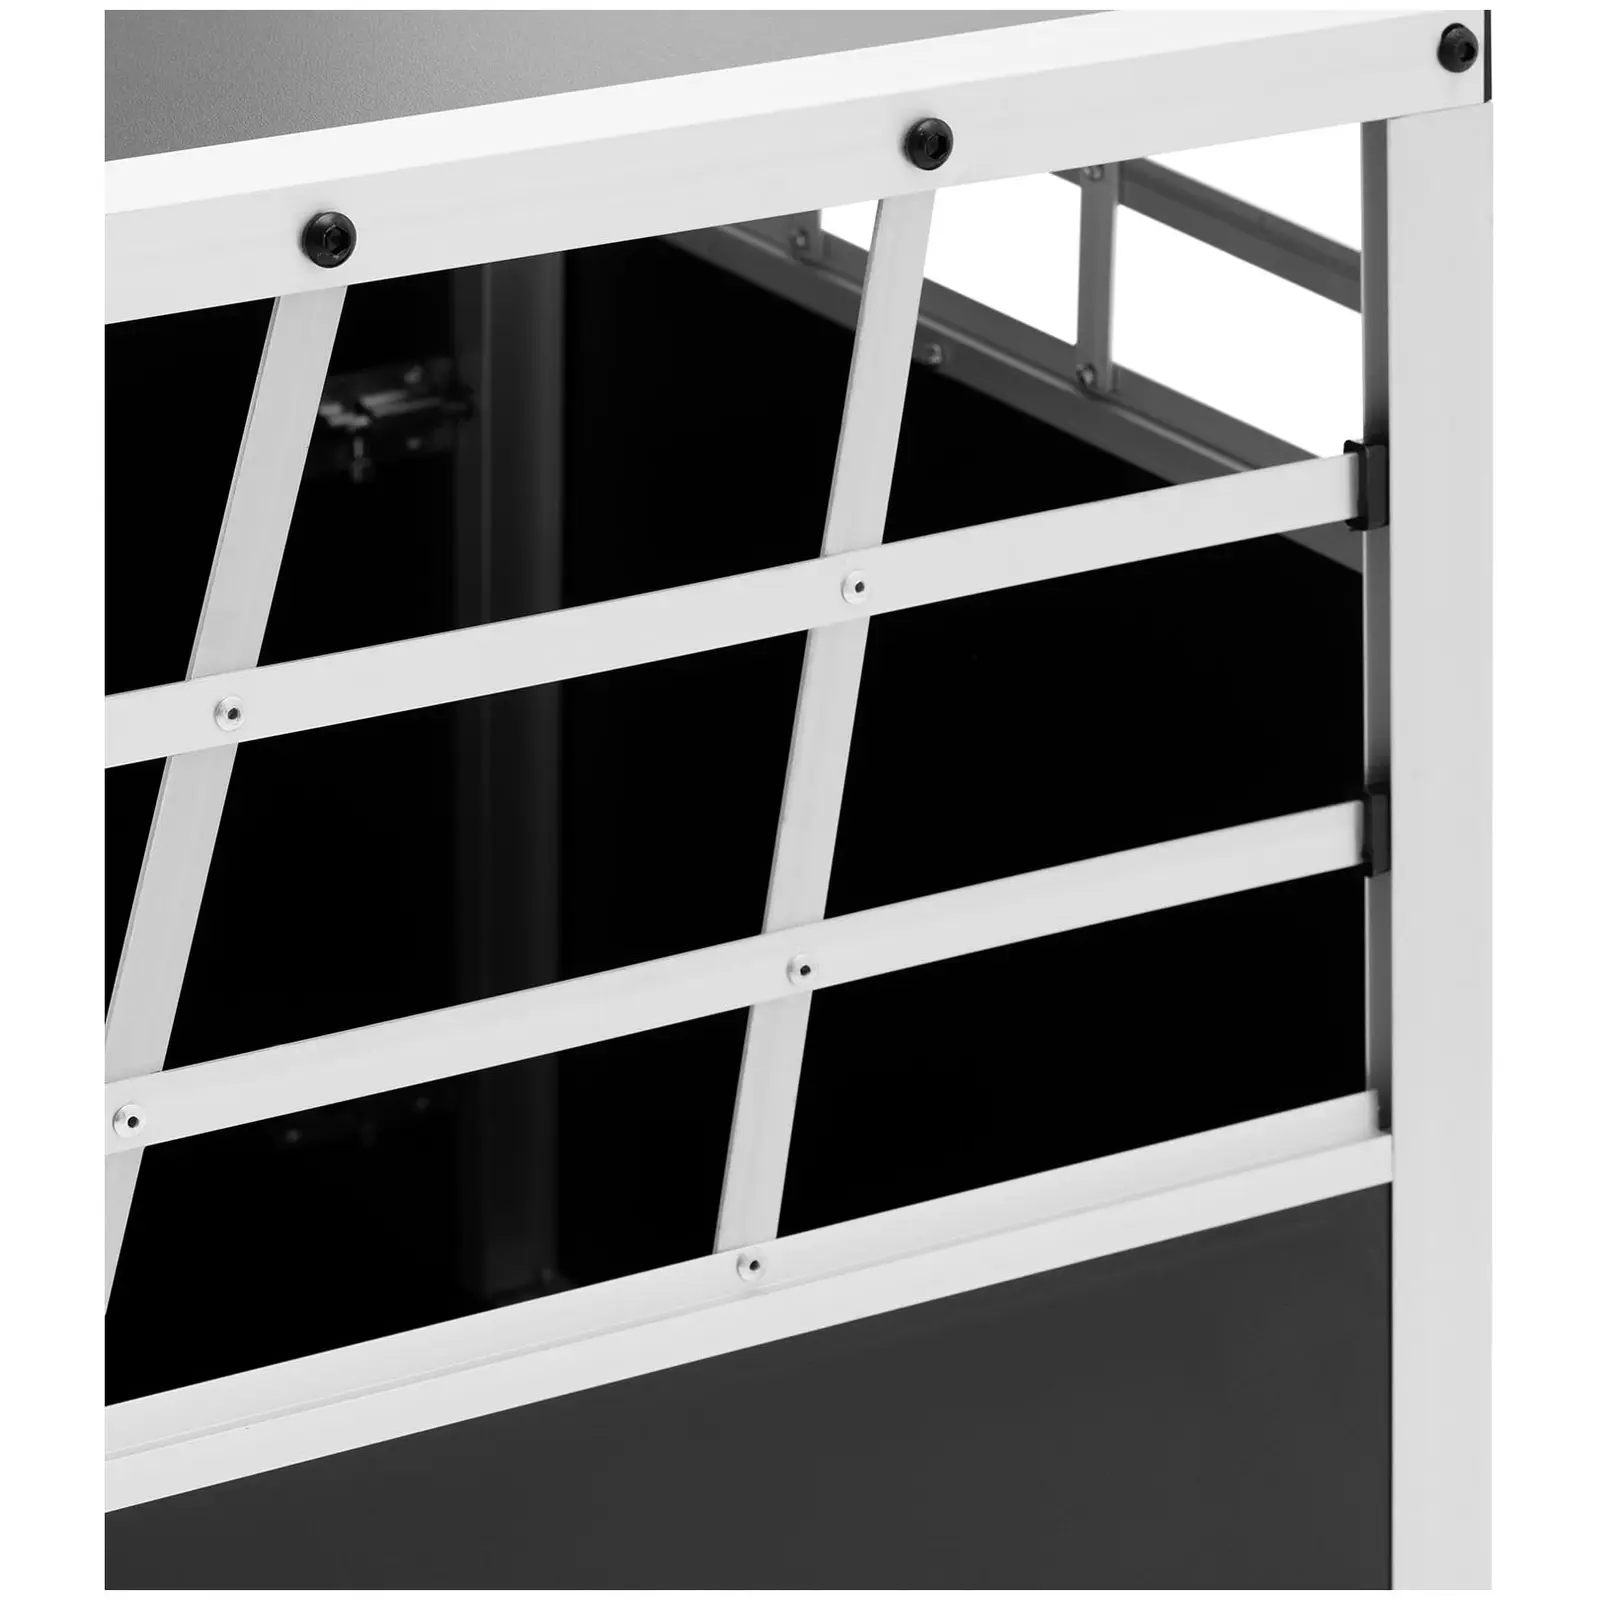 Κλουβί σκύλου - Αλουμίνιο - Τραπεζοειδές σχήμα - 70 x 90 x 50 cm - με διαχωριστικό